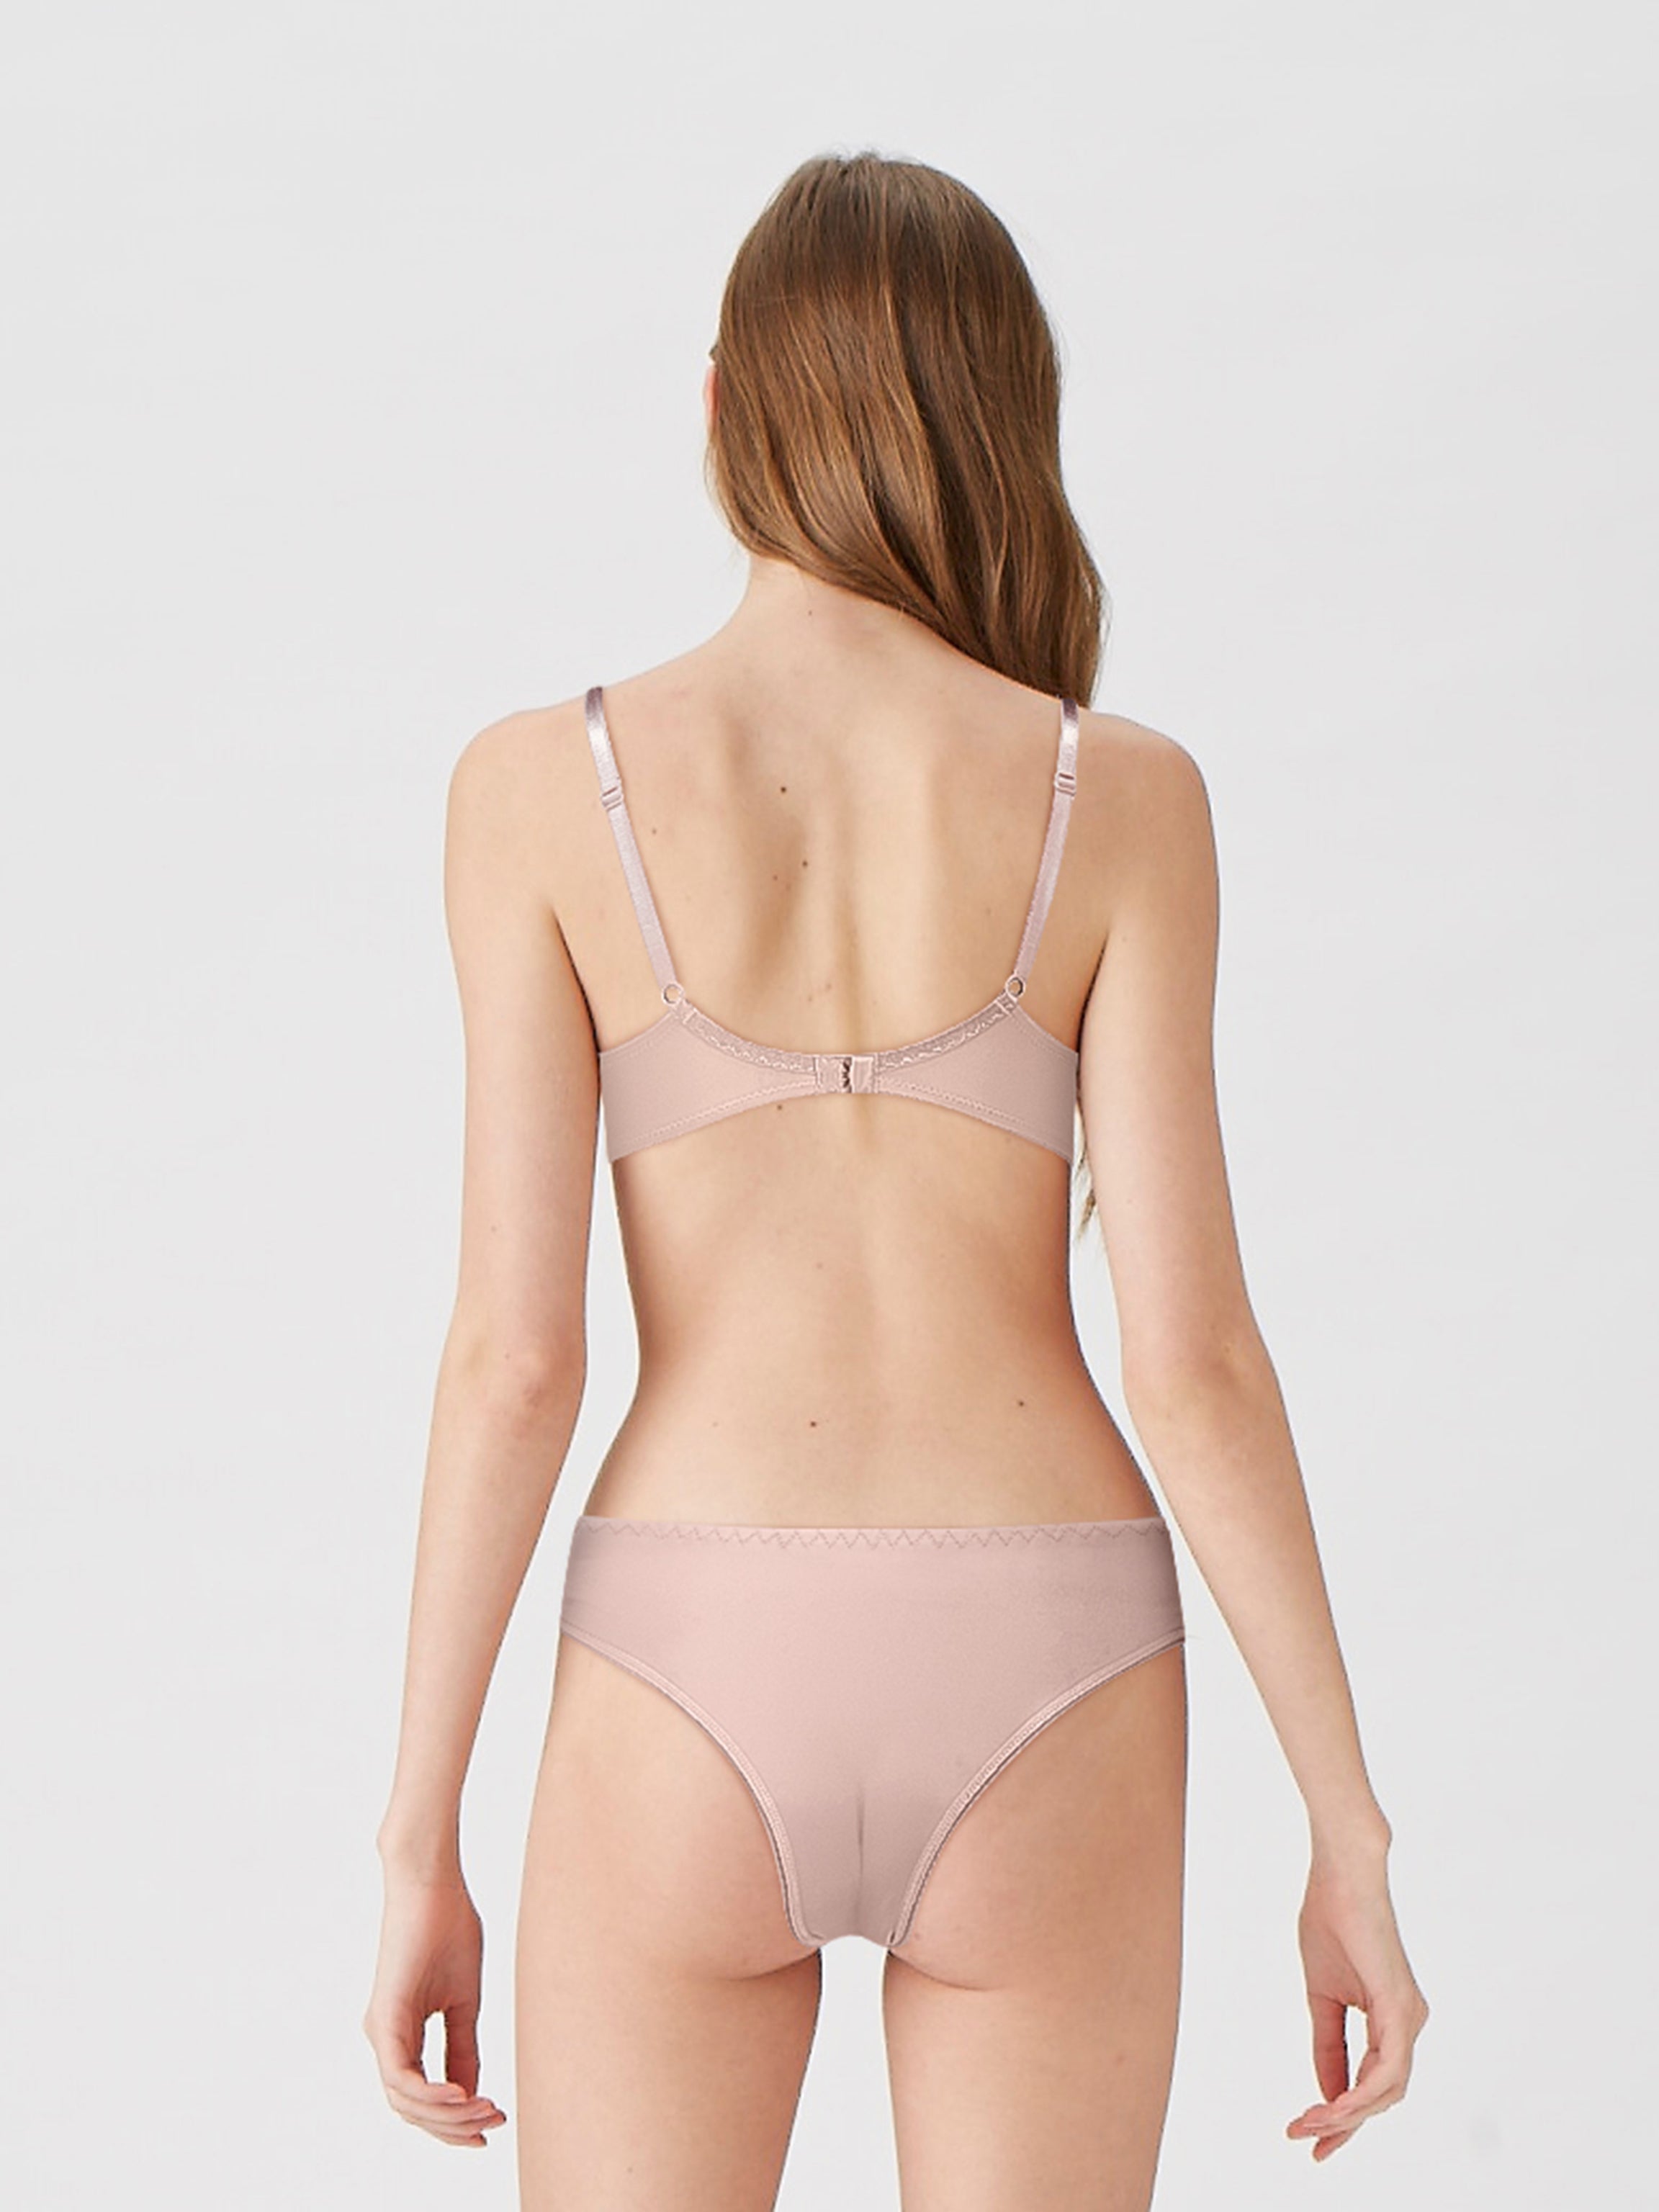 BLS - Breathable Lace Panty - Crème Brule